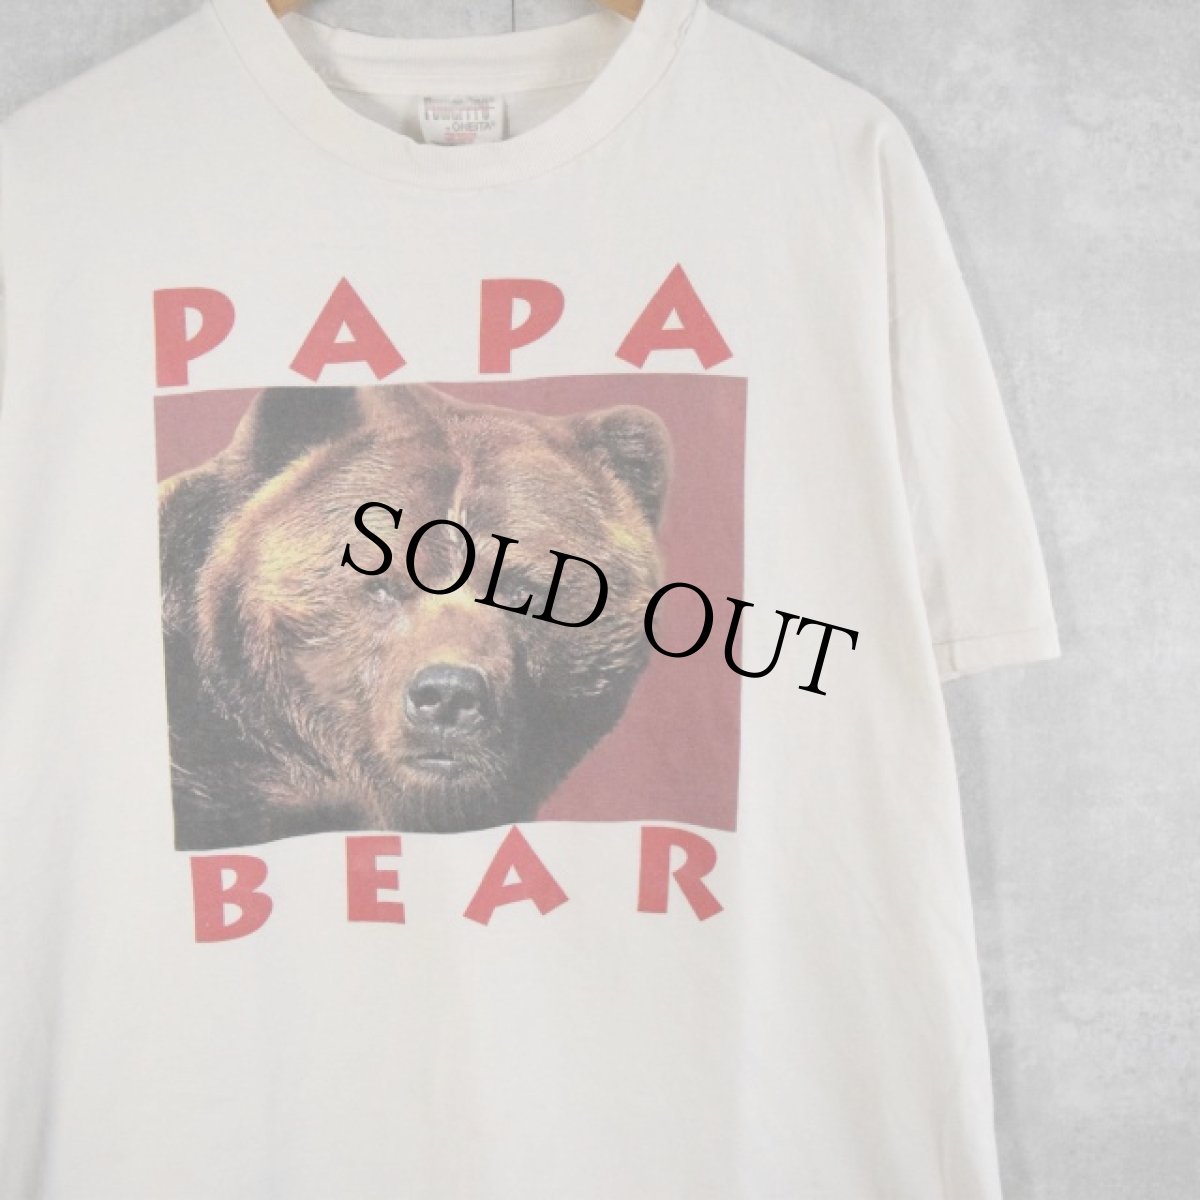 画像1: 90's PAPA BEAR くまプリントTシャツ XL (1)